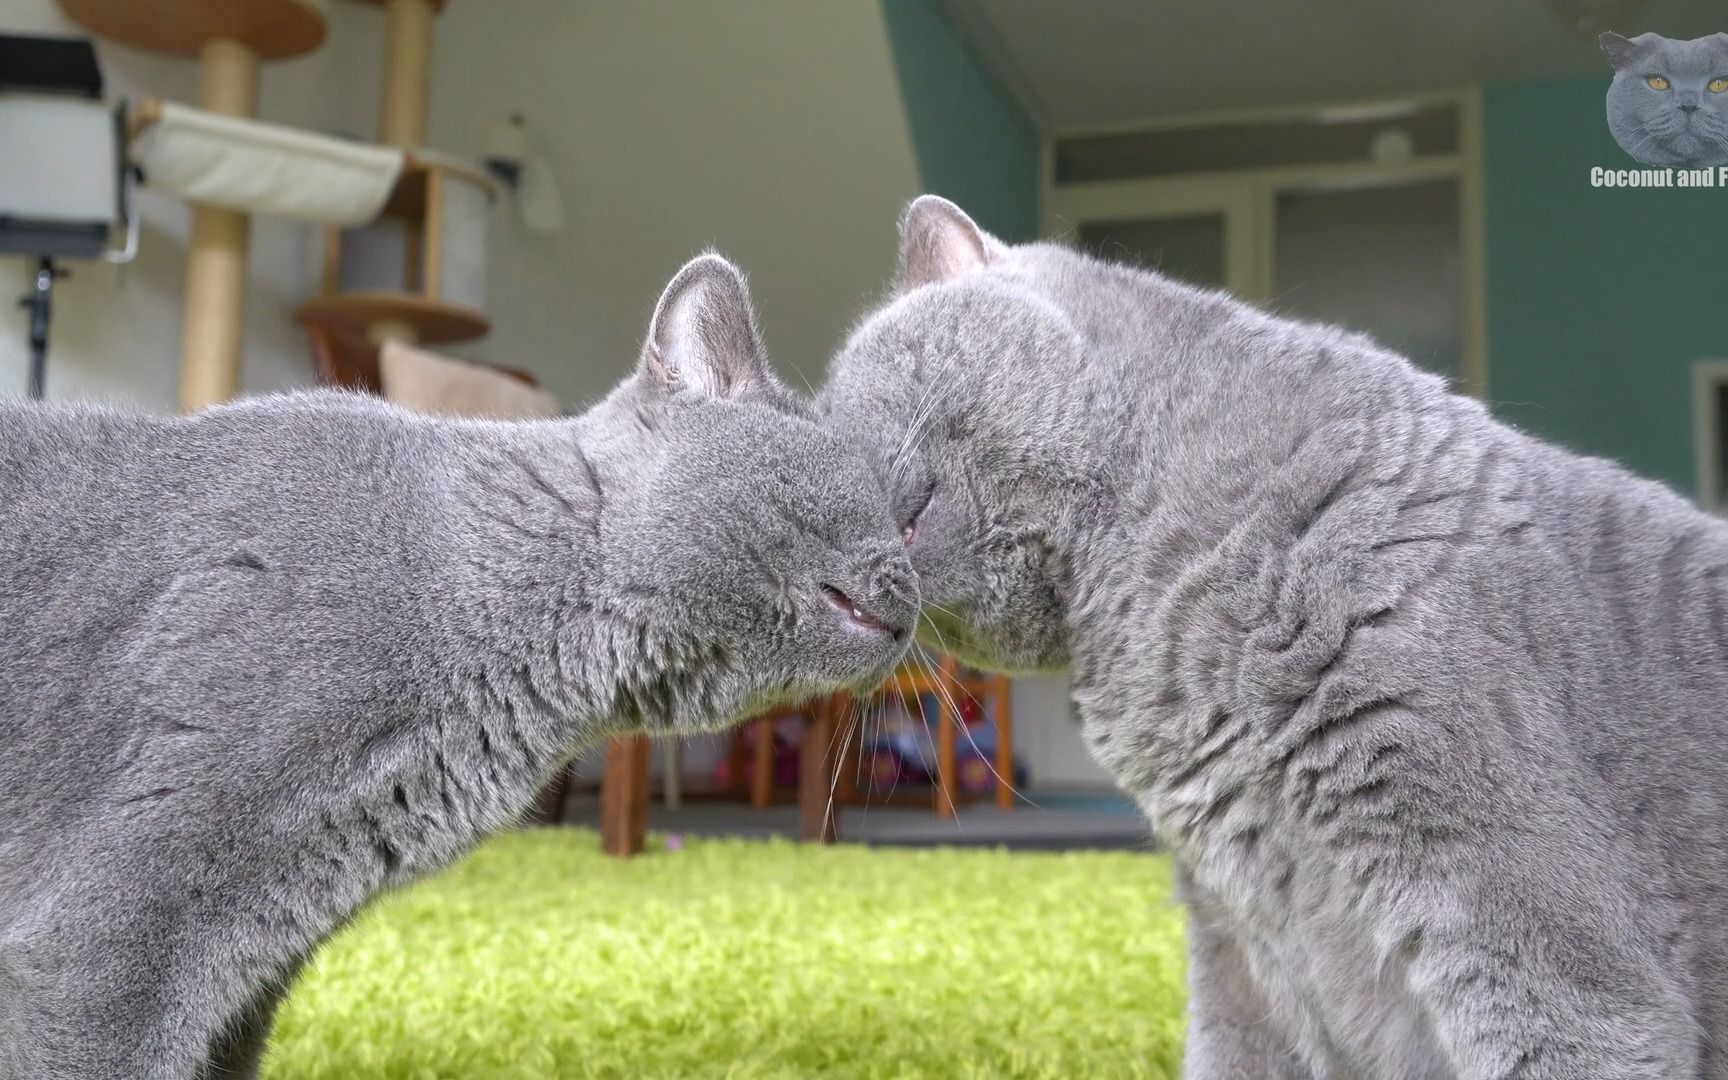 两只小猫亲吻图片